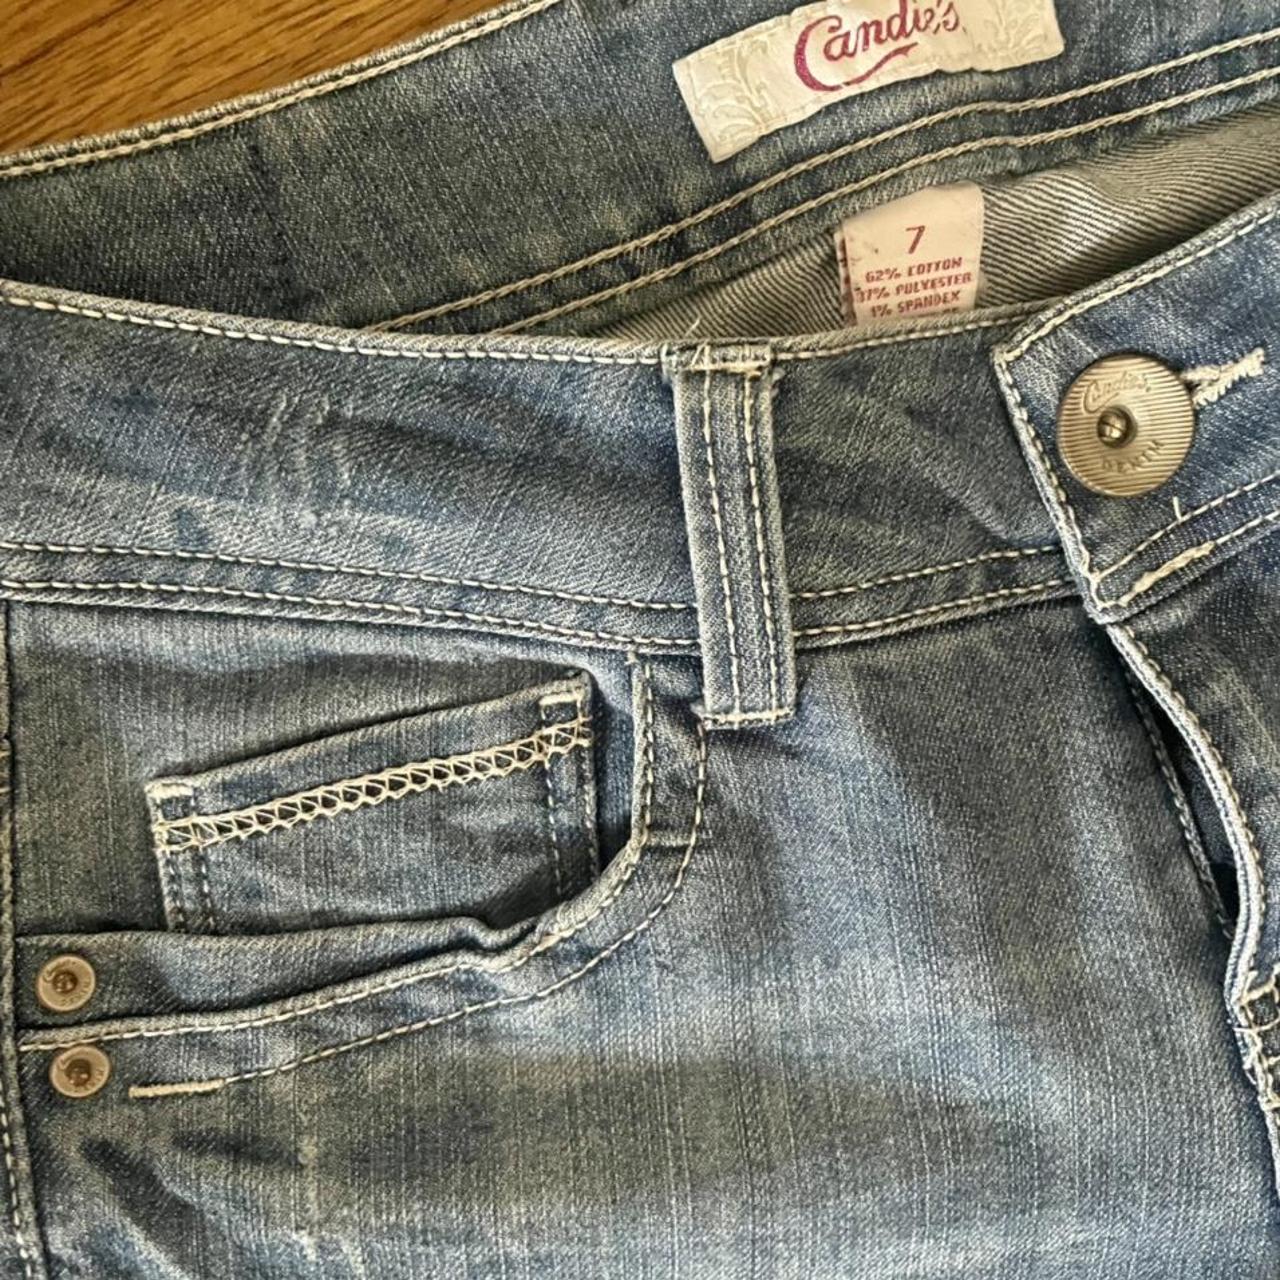 Vintage Candies Jeans! Excellent condition!! Sorry... - Depop